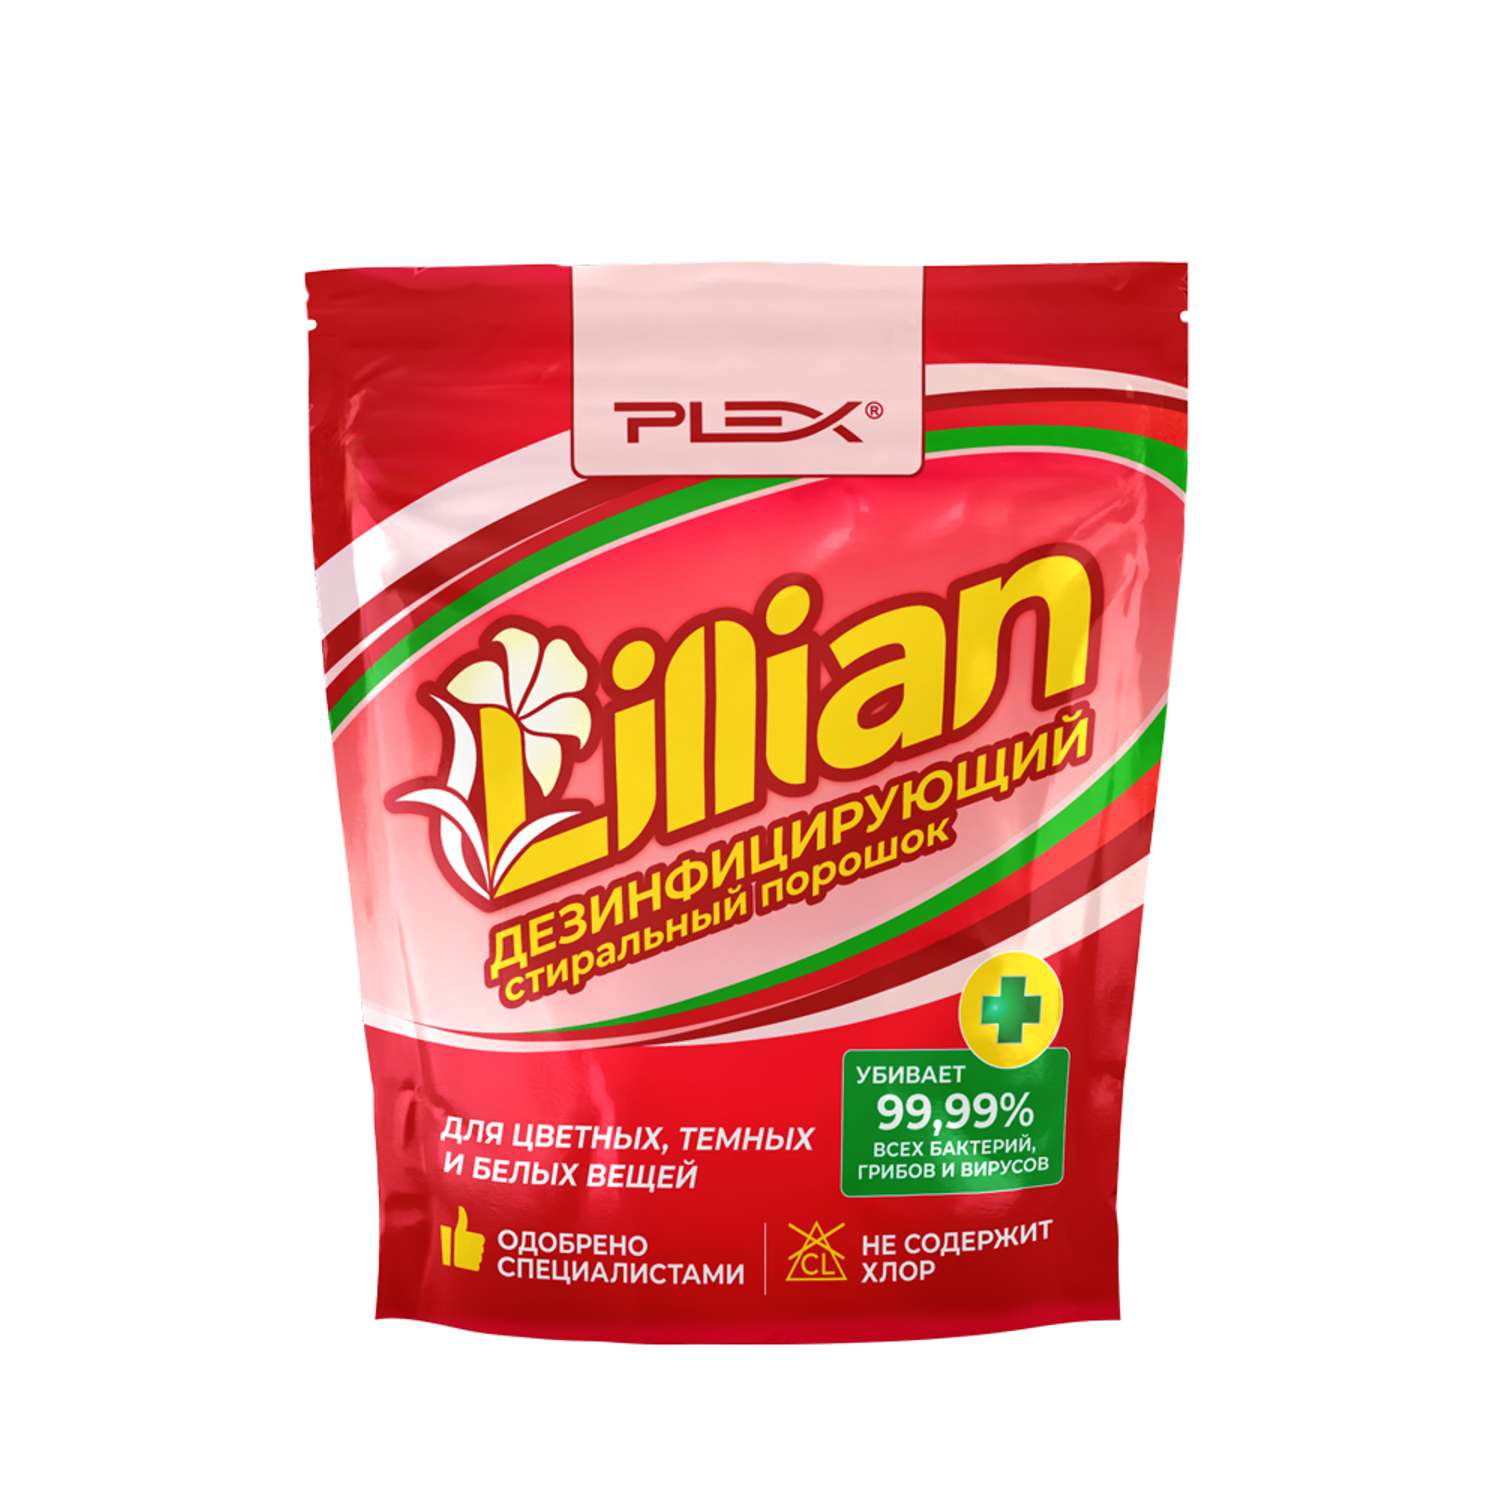 Стиральный порошок Plex дезинфицирующий для цветного белого и детского белья Lillian 1 кг - 22 стирки дой-пак - фото 1